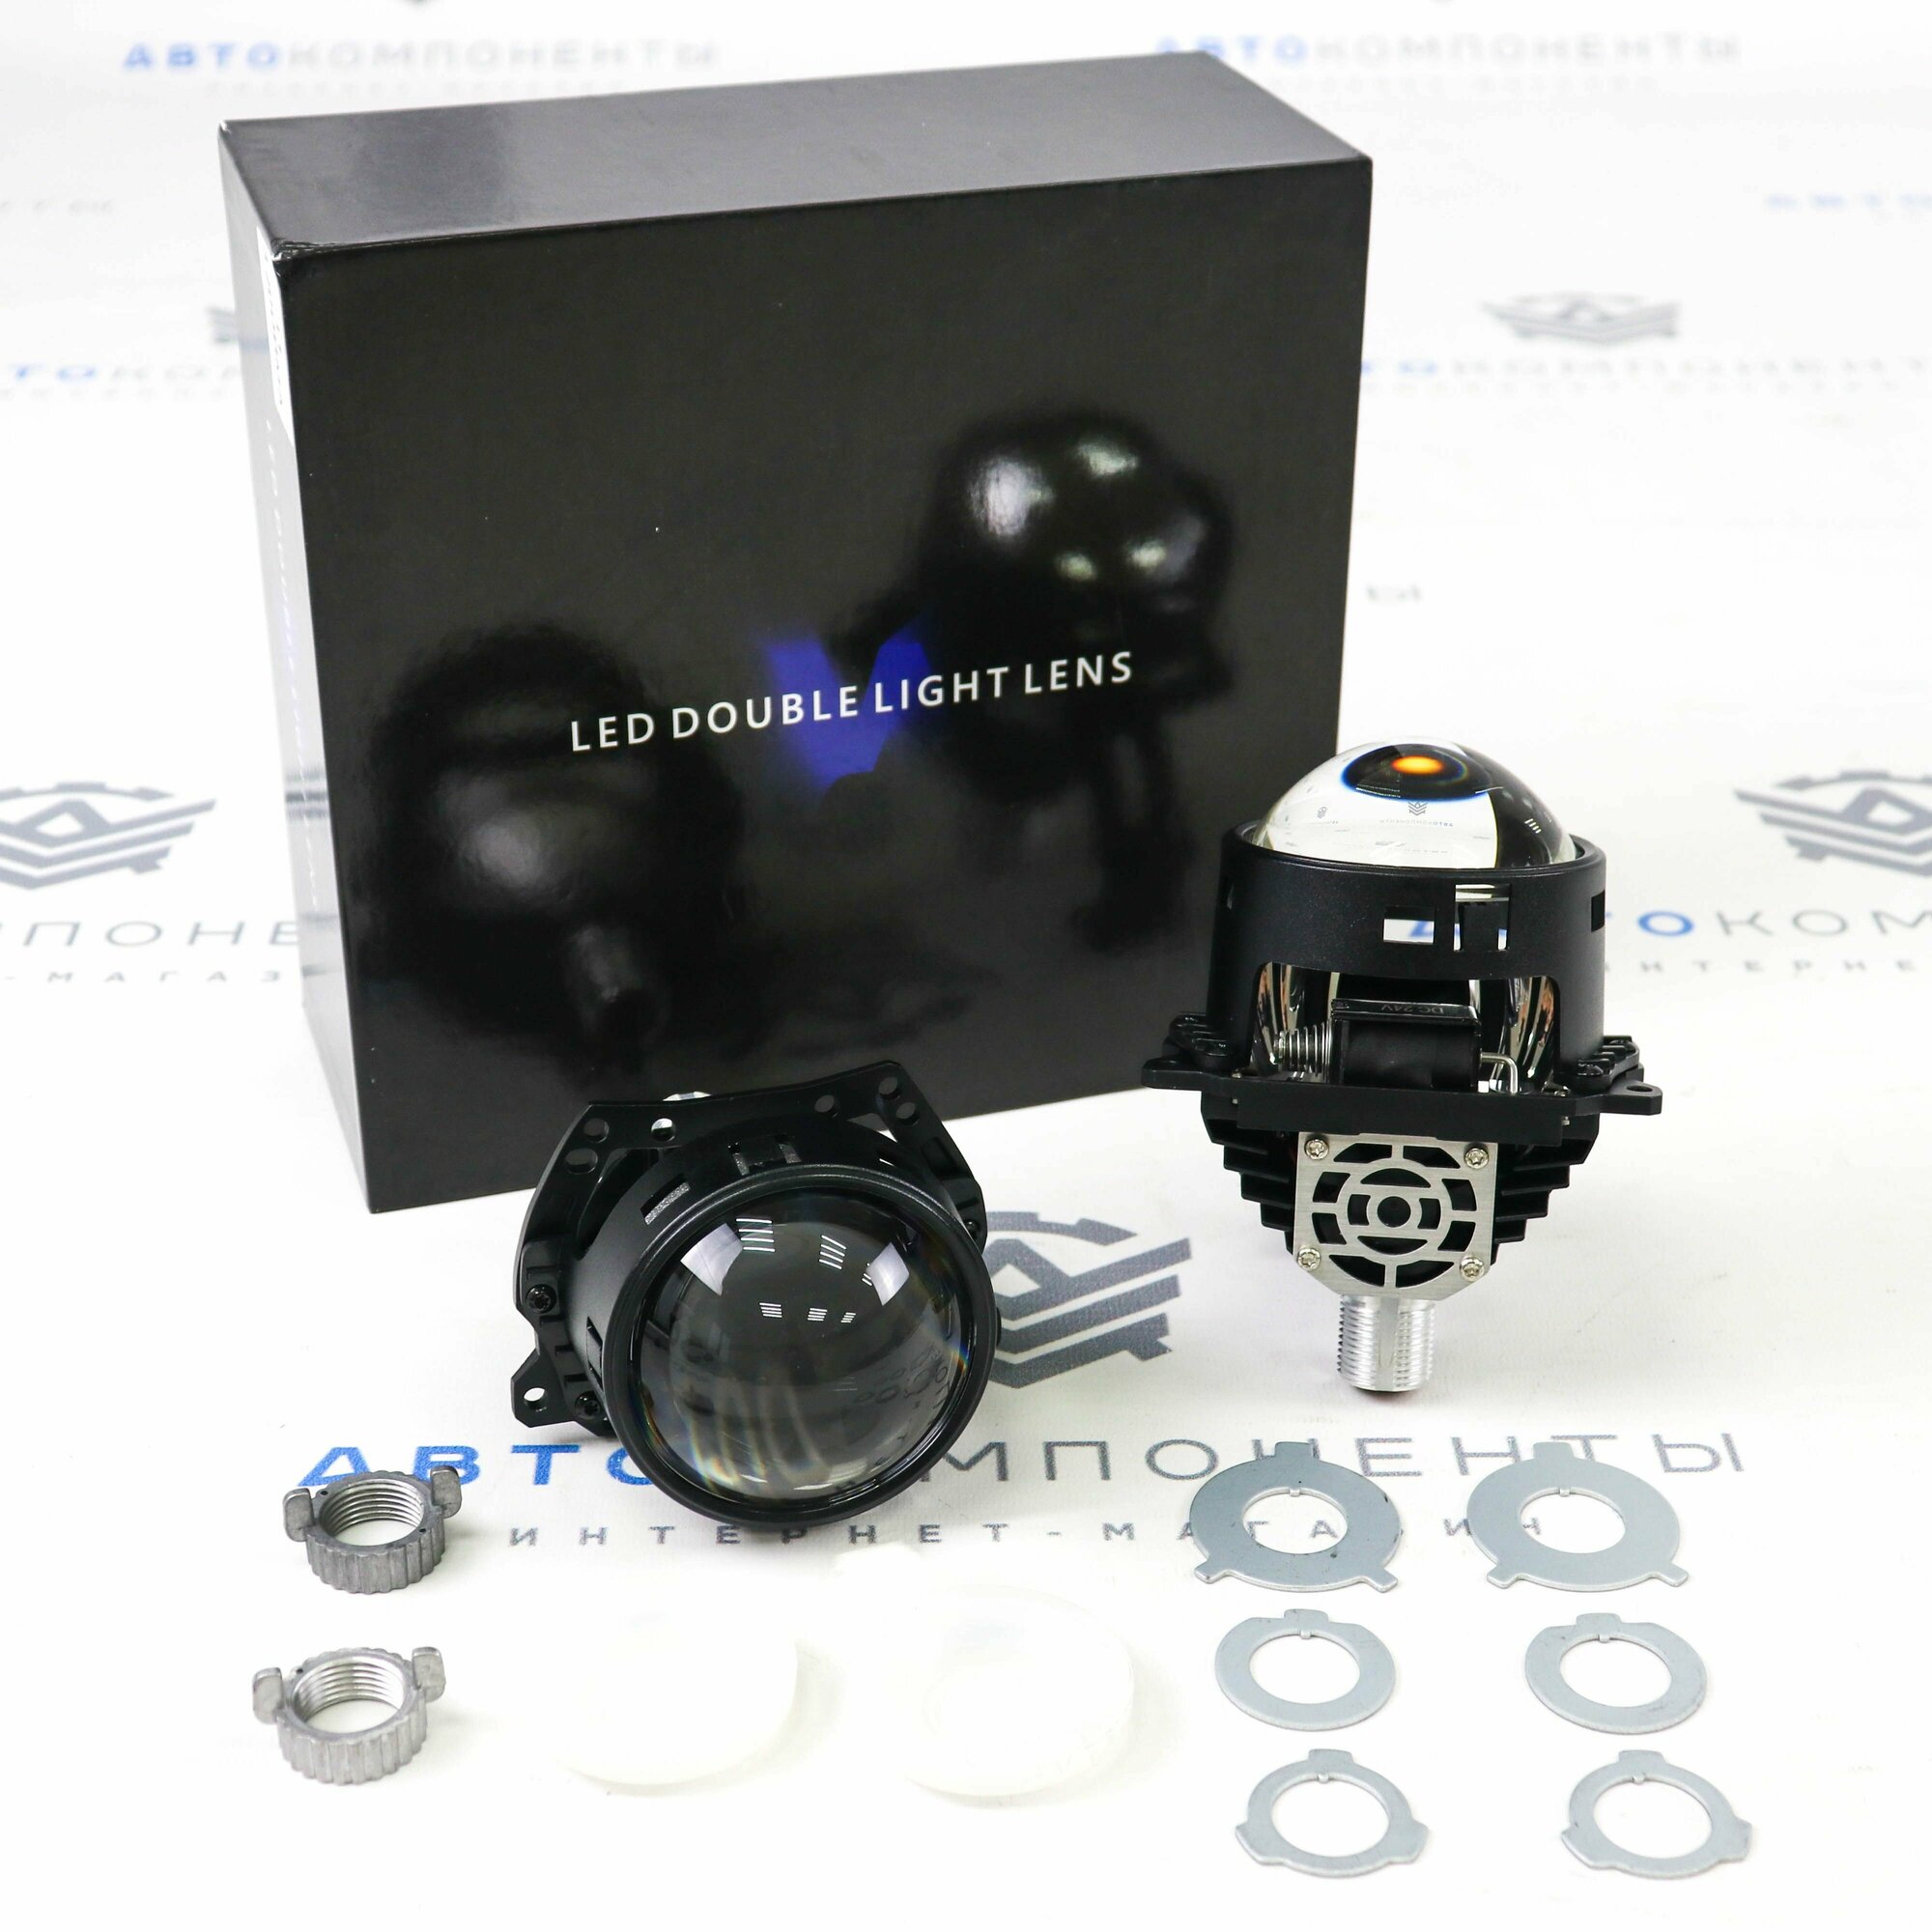 BI-LED модули (линзы) "Led Double Light Lens" L1 3.0 дюйма (HA24V)